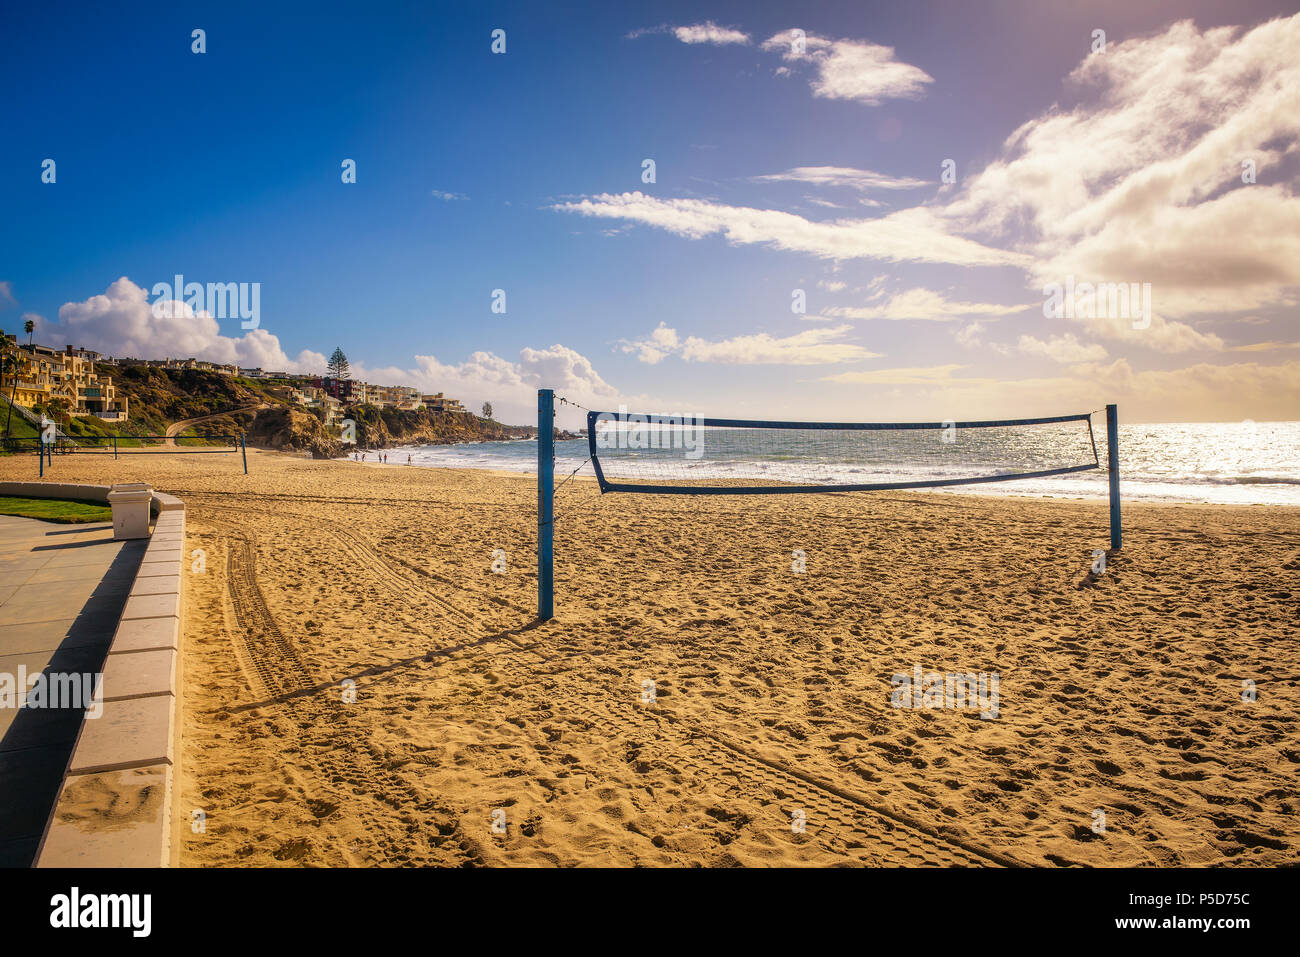 Red de voleibol de playa en la Playa Estatal de Corona del Mar, cerca de Los Angeles Foto de stock